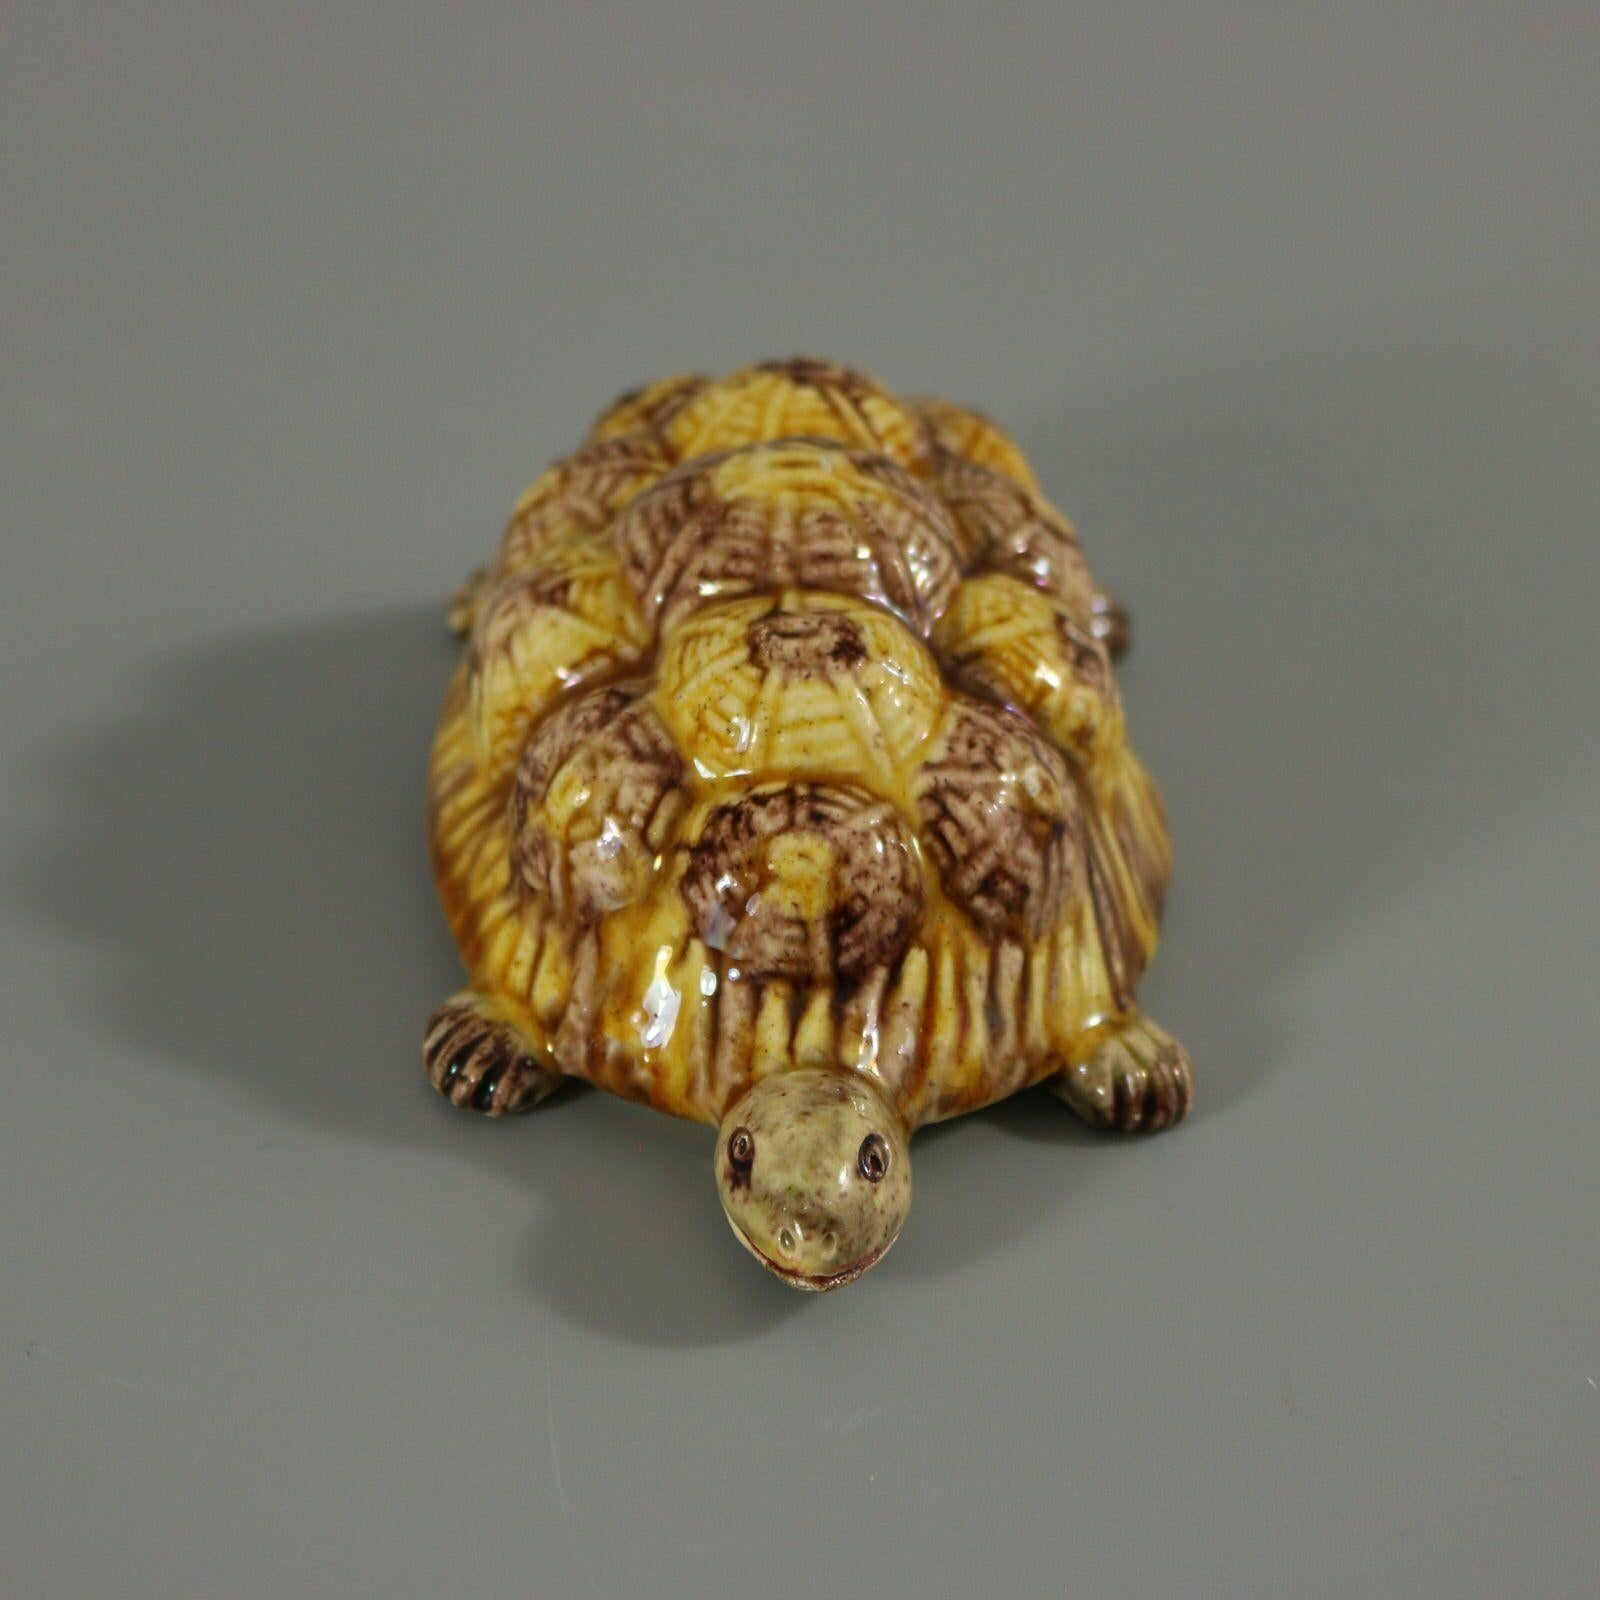 Portugiesische Palissy-Majolika-Figur, die eine Schildkröte darstellt. Färbung: Braun, ockerfarben, grau, sind vorherrschend.